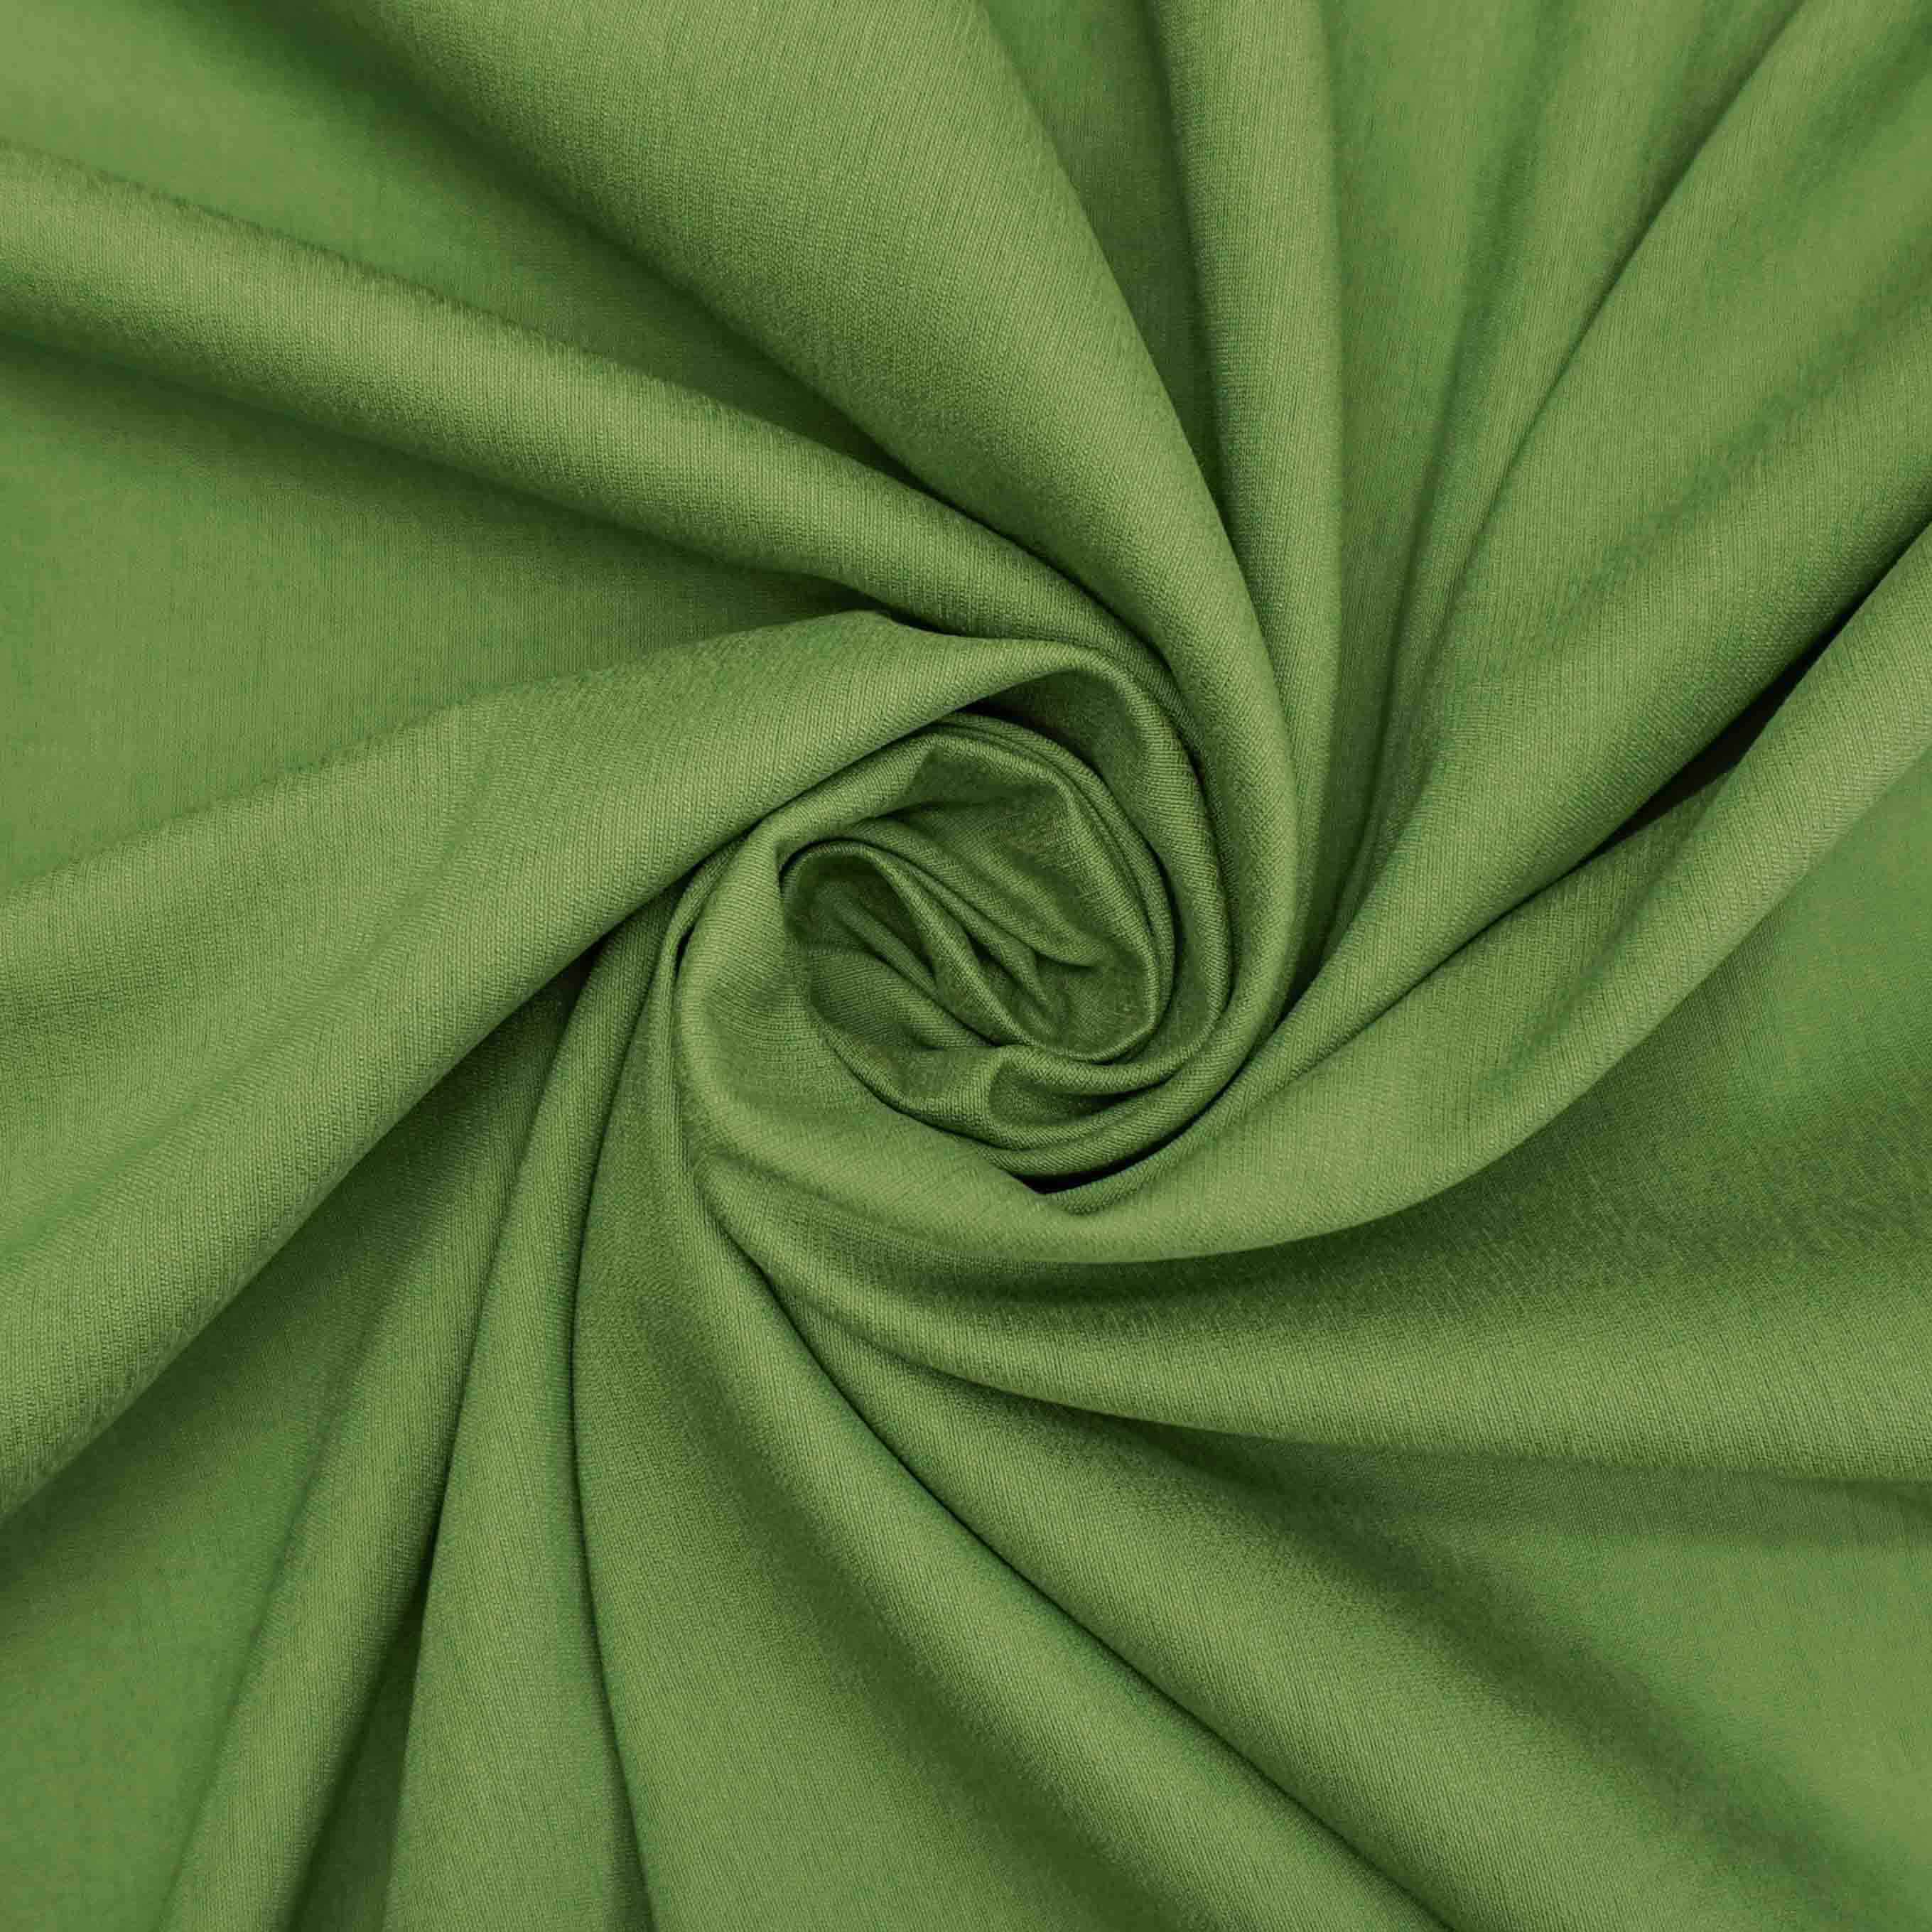 Tecido alfaiataria viscose twill trama de linho verde folha